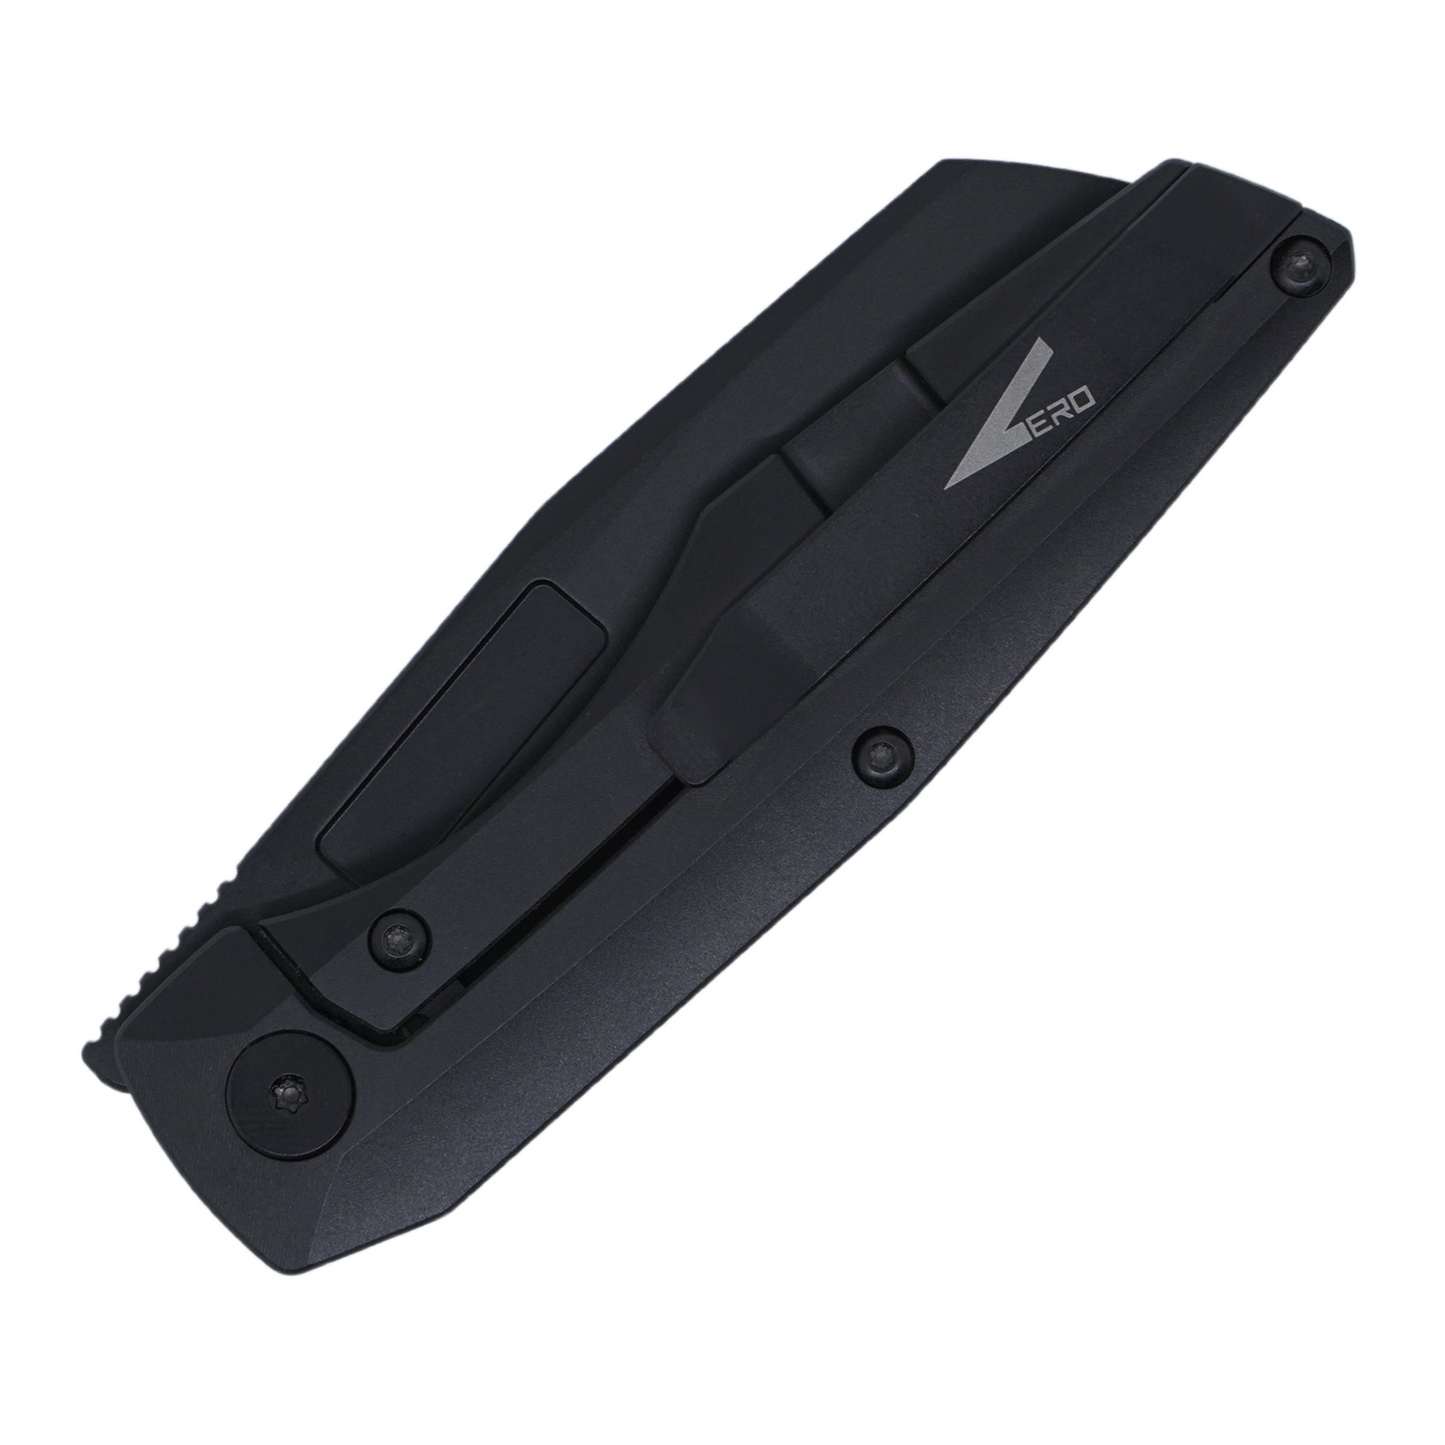 Vero Axon Mini, DLC Titanium Handles / DLC M390 Blade